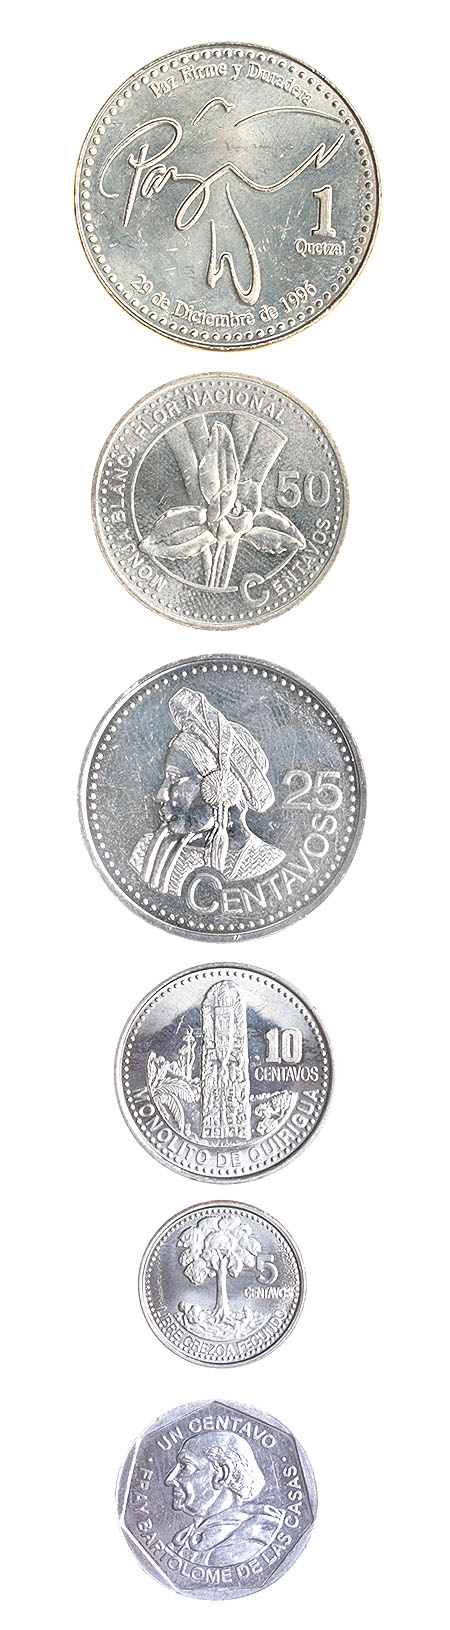 Комплект из 6 монет Металл Венесуэла, 2000 - 2007 гг 2000 г инфо 10566g.